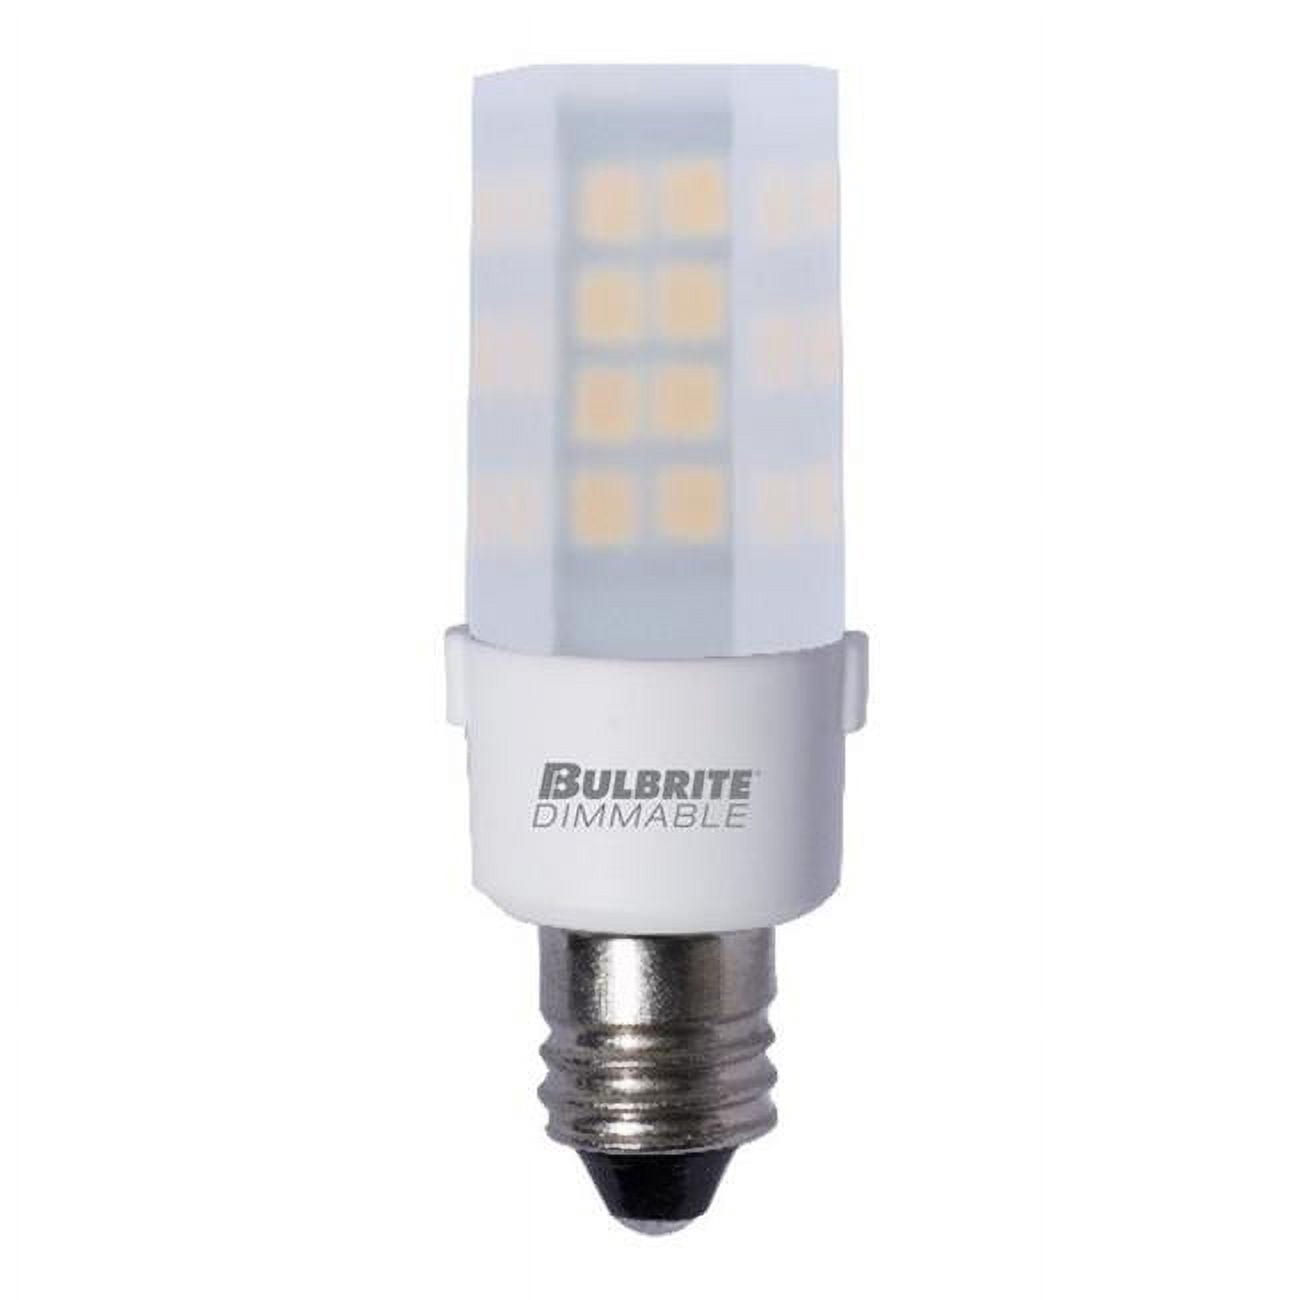 Picture of Bulbrite 861520 4.5 watt 120V Dimmable Frost T4 LED Mini Light Bulbs with Candelabra E12 Base, 3000K Soft White Light, 340 Lumens - Pack of 2